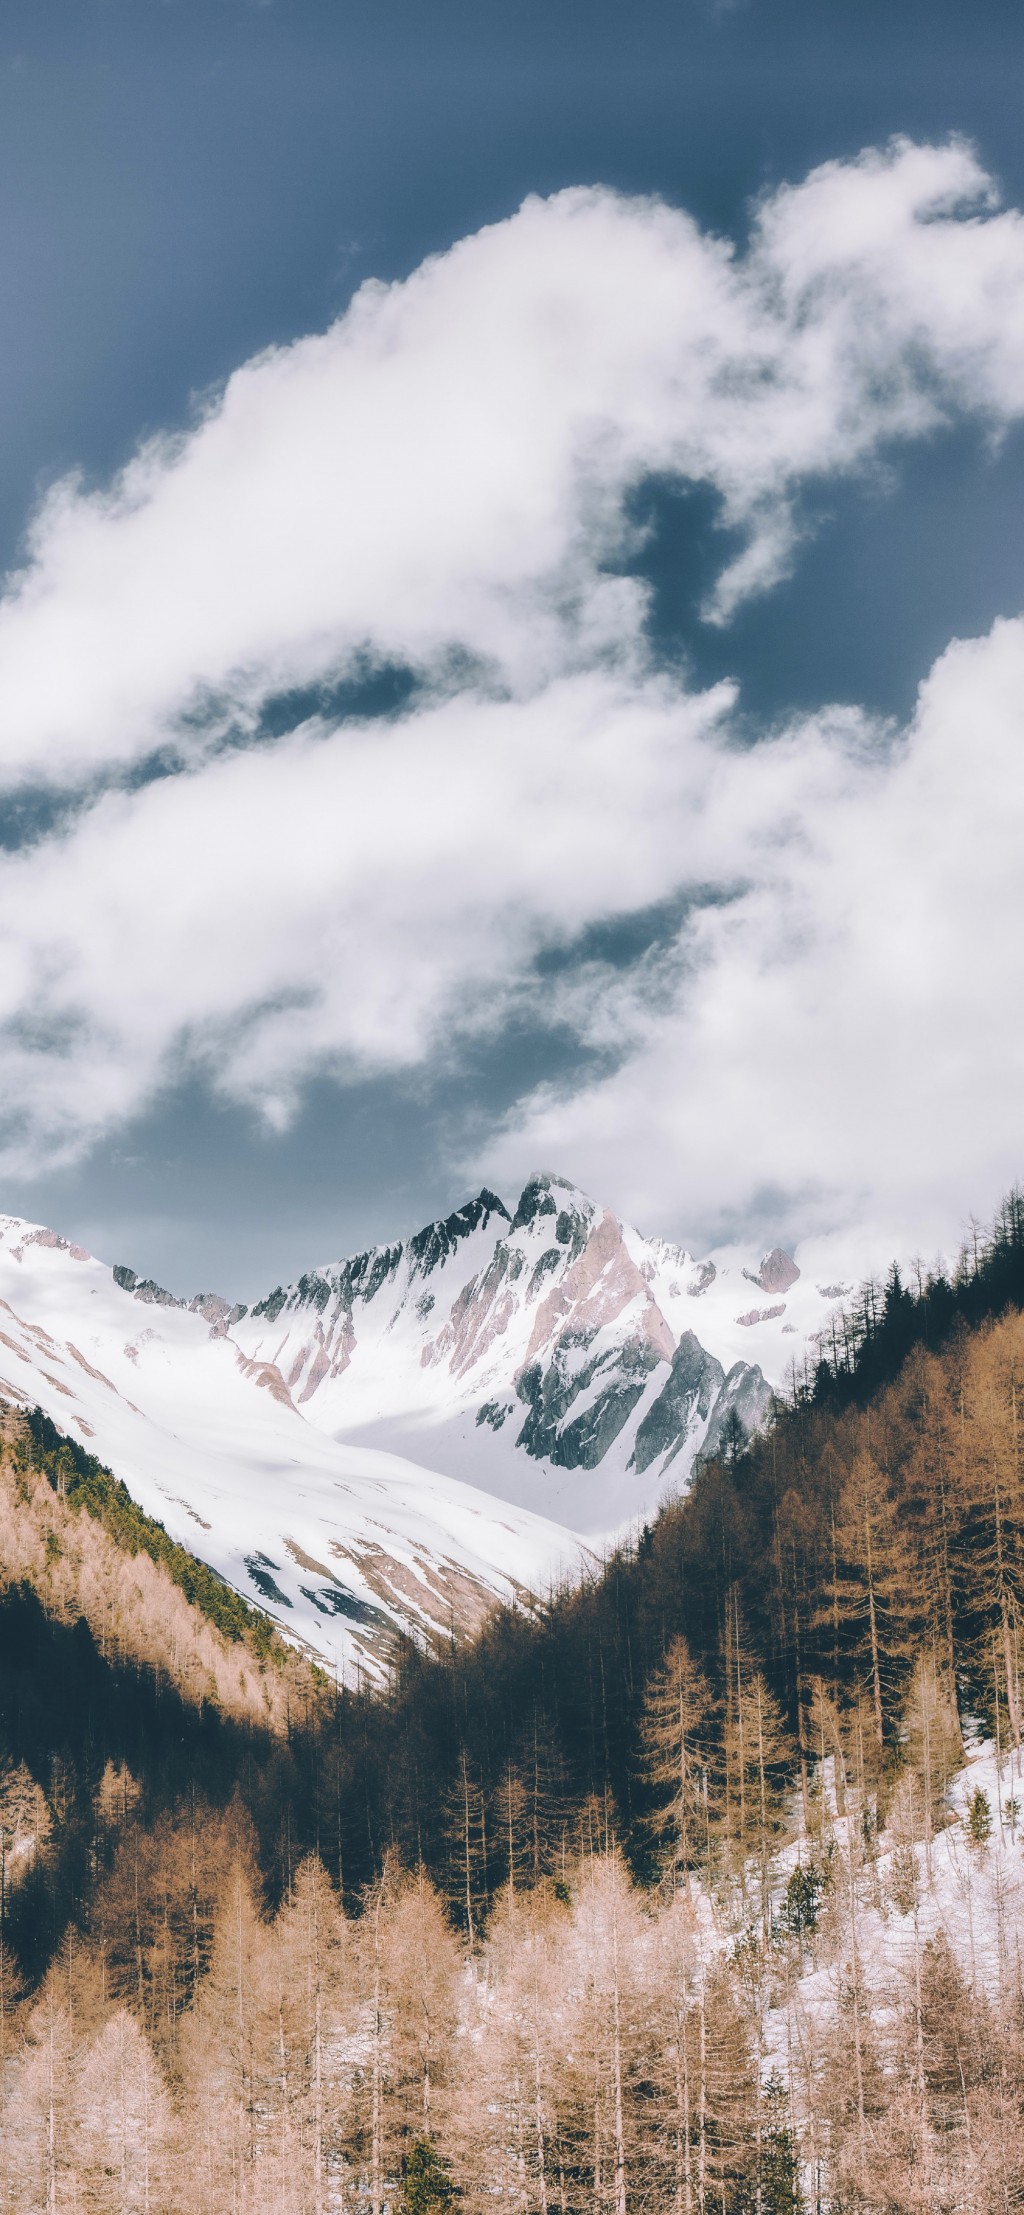 唯美雪山壮阔自然风景手机壁纸